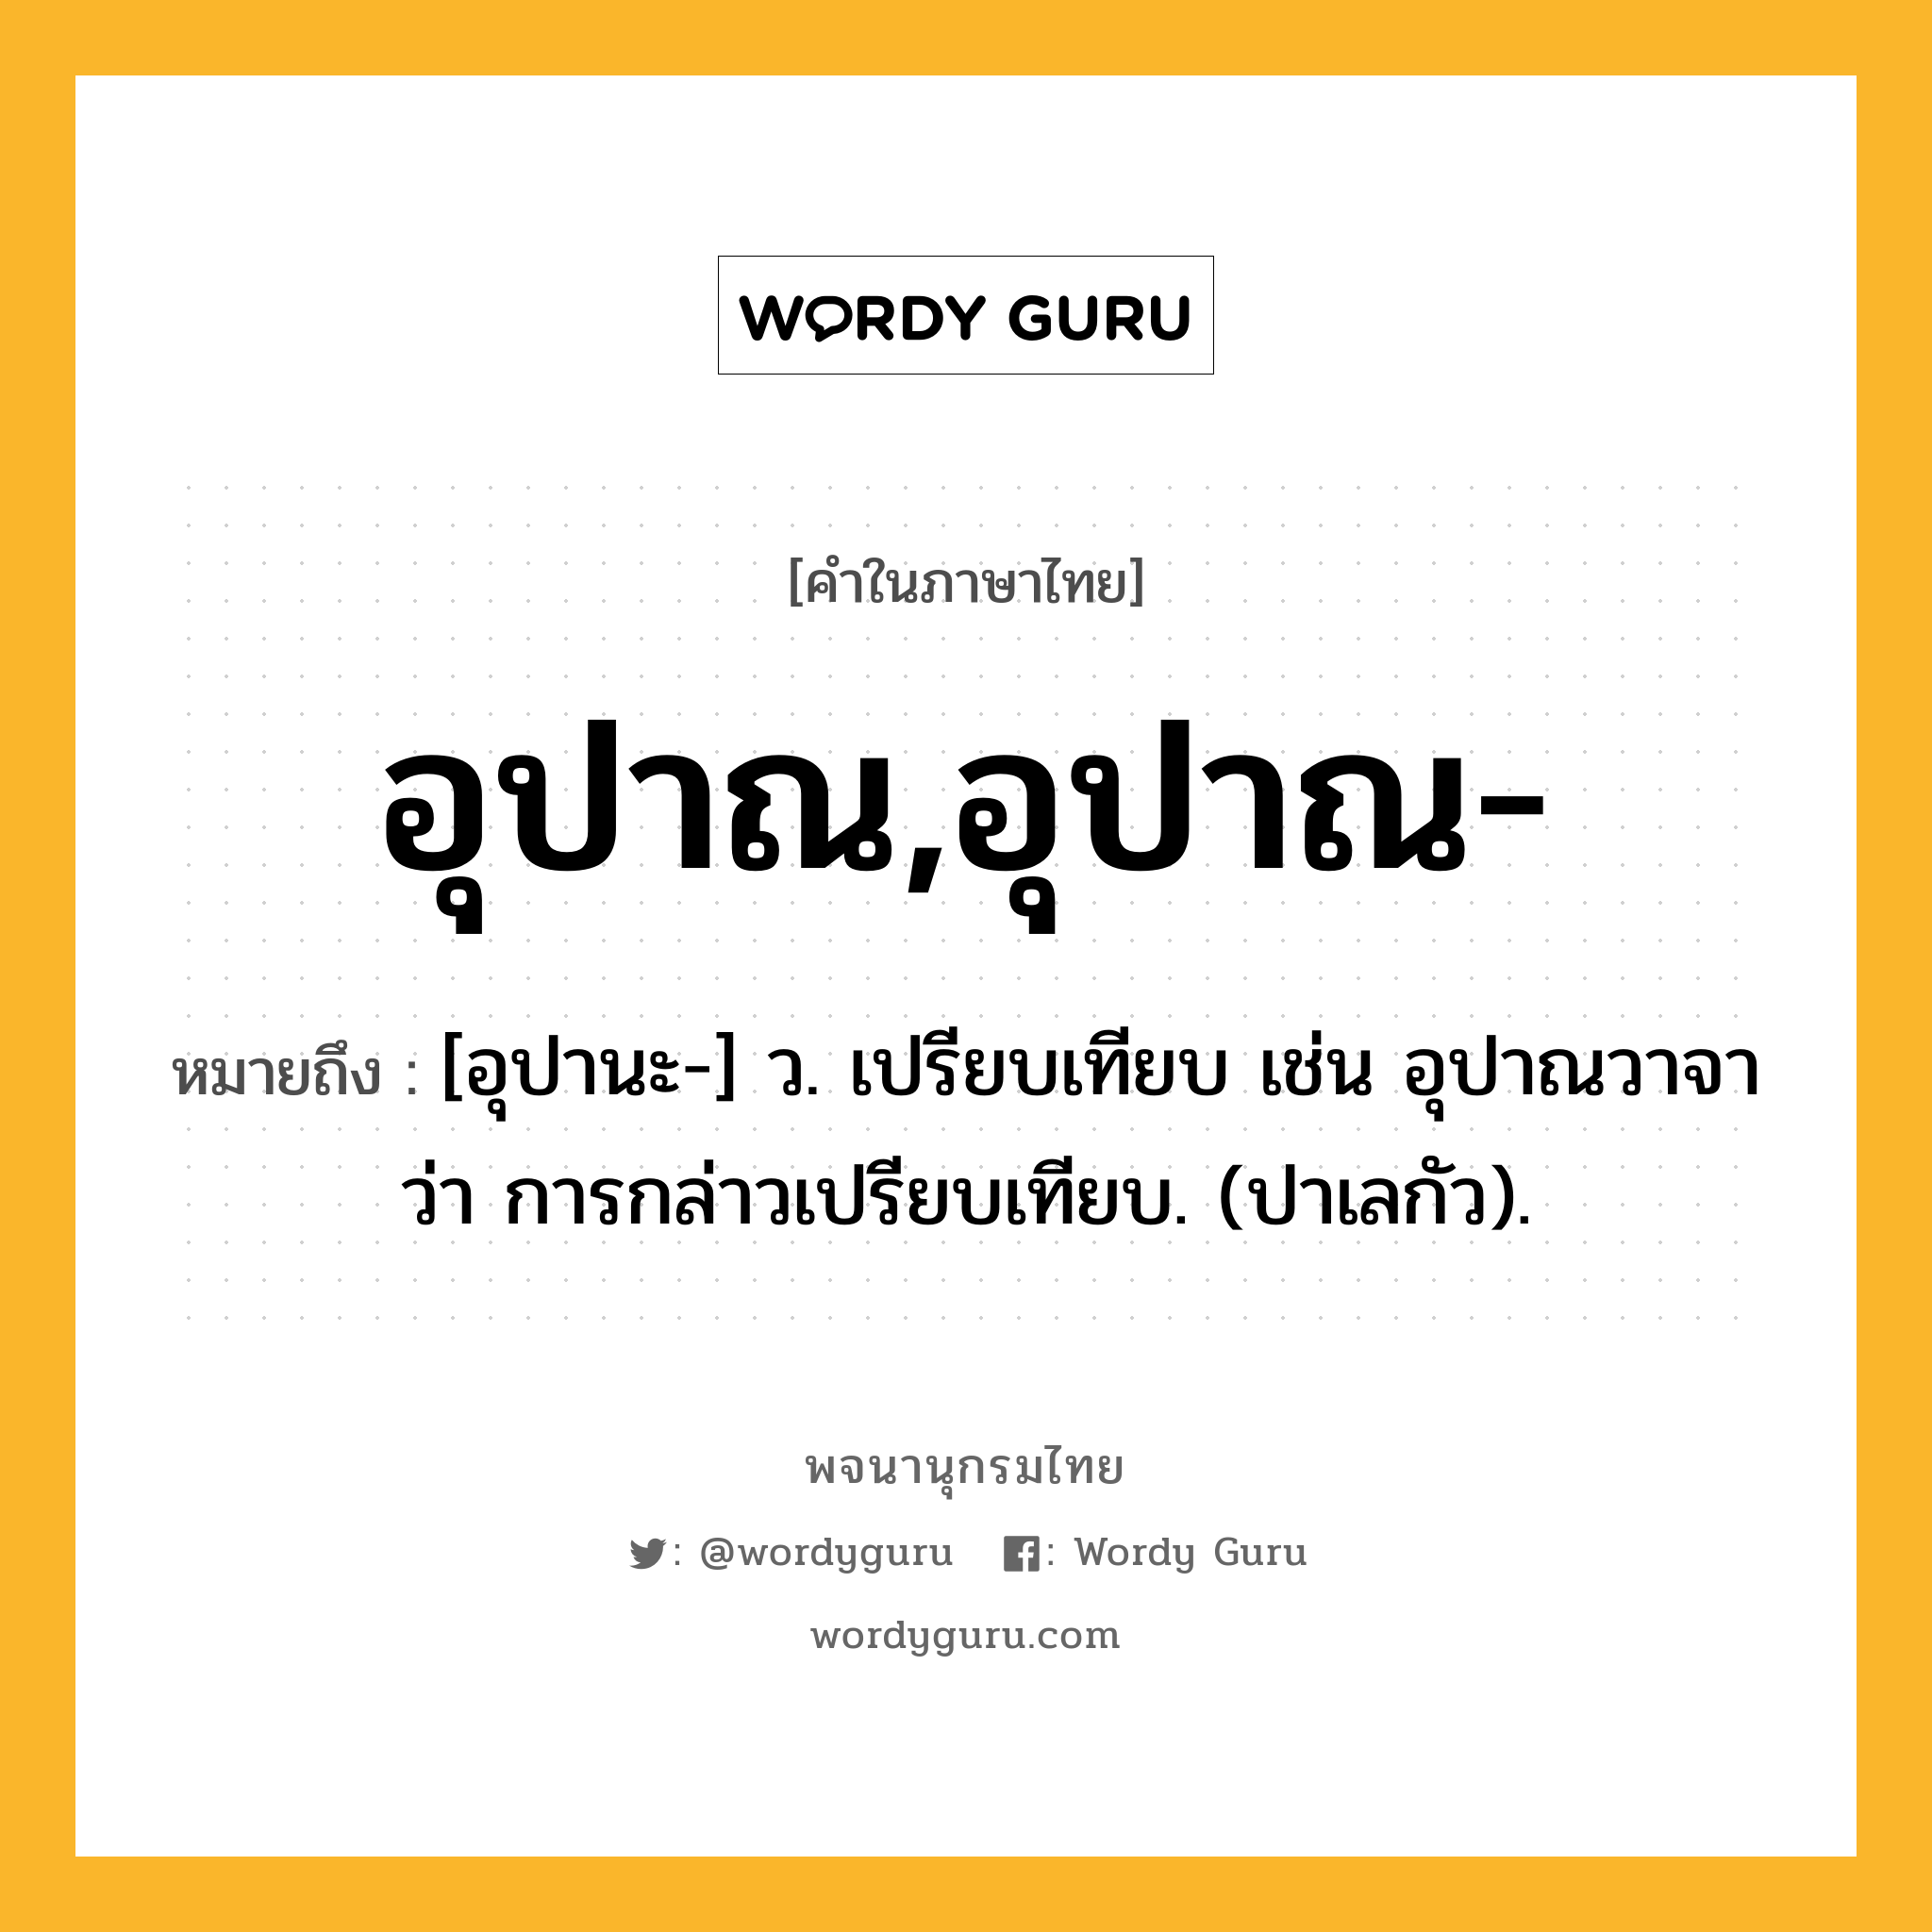 อุปาณ,อุปาณ- ความหมาย หมายถึงอะไร?, คำในภาษาไทย อุปาณ,อุปาณ- หมายถึง [อุปานะ-] ว. เปรียบเทียบ เช่น อุปาณวาจา ว่า การกล่าวเปรียบเทียบ. (ปาเลกัว).